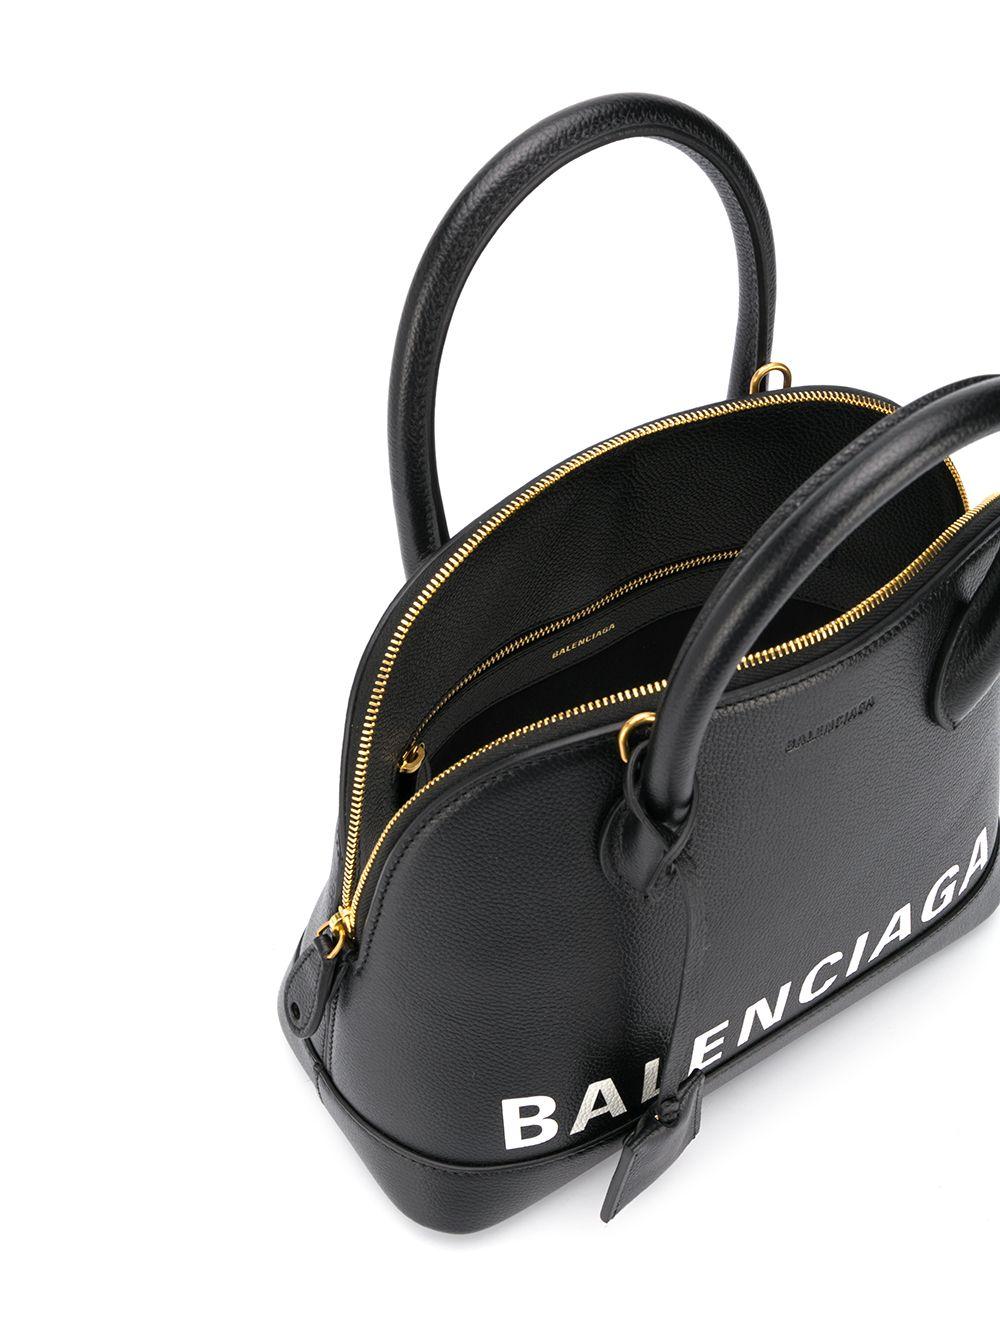 Balenciaga Logo Ville Camera Bag Leather Small Black 2163811